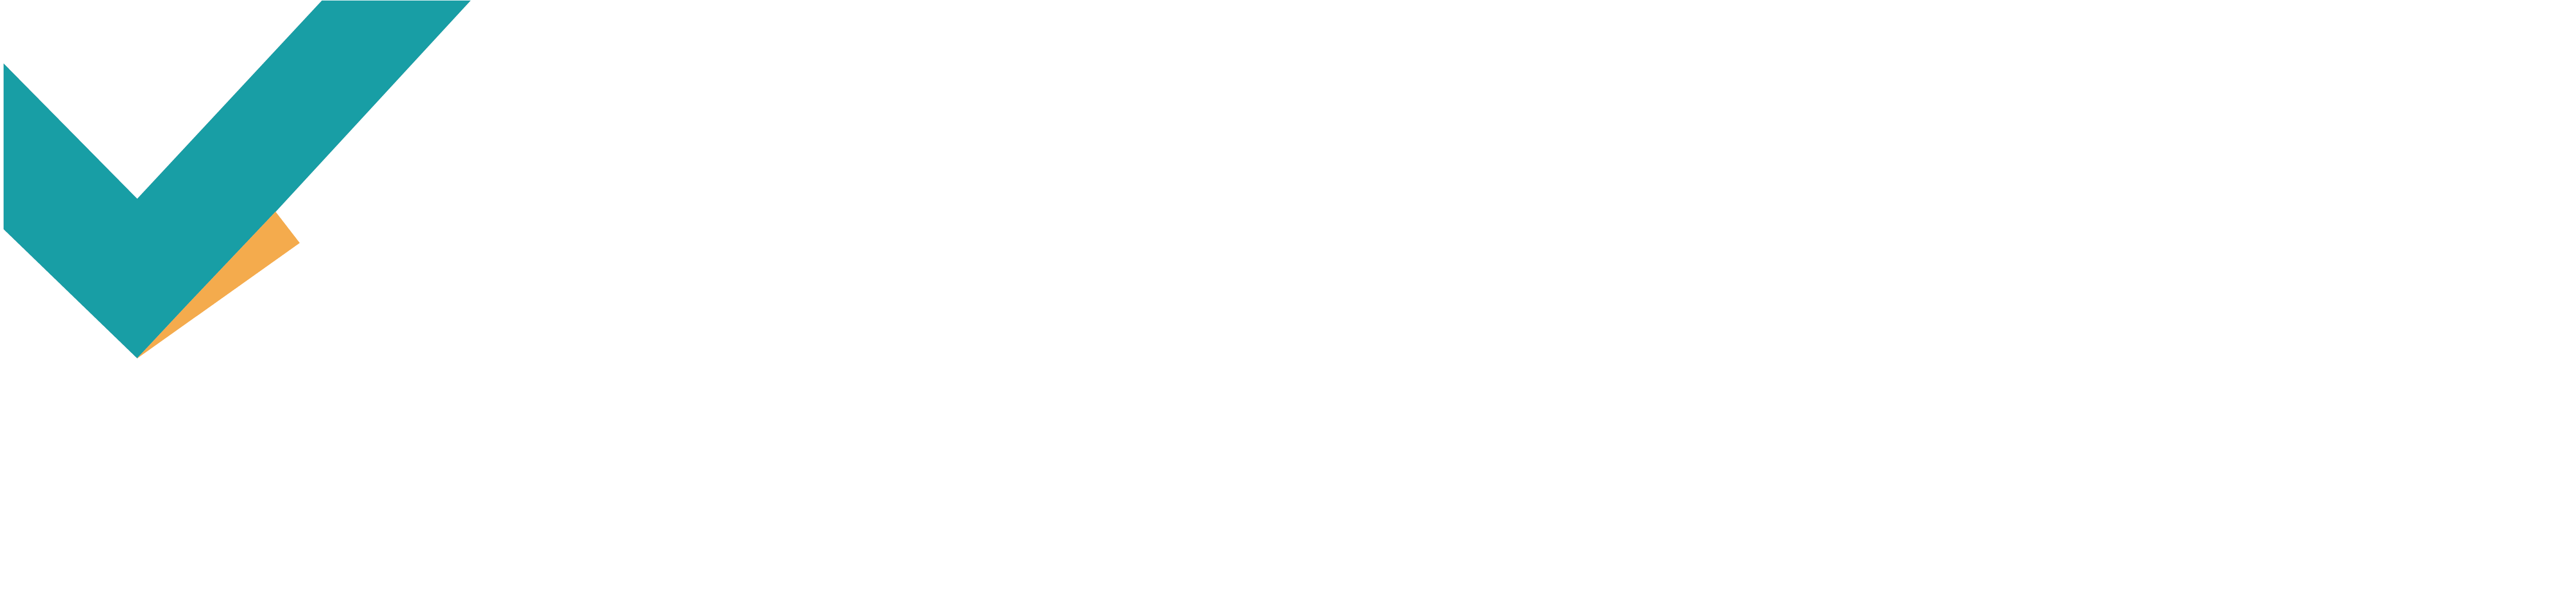 kallik-logo